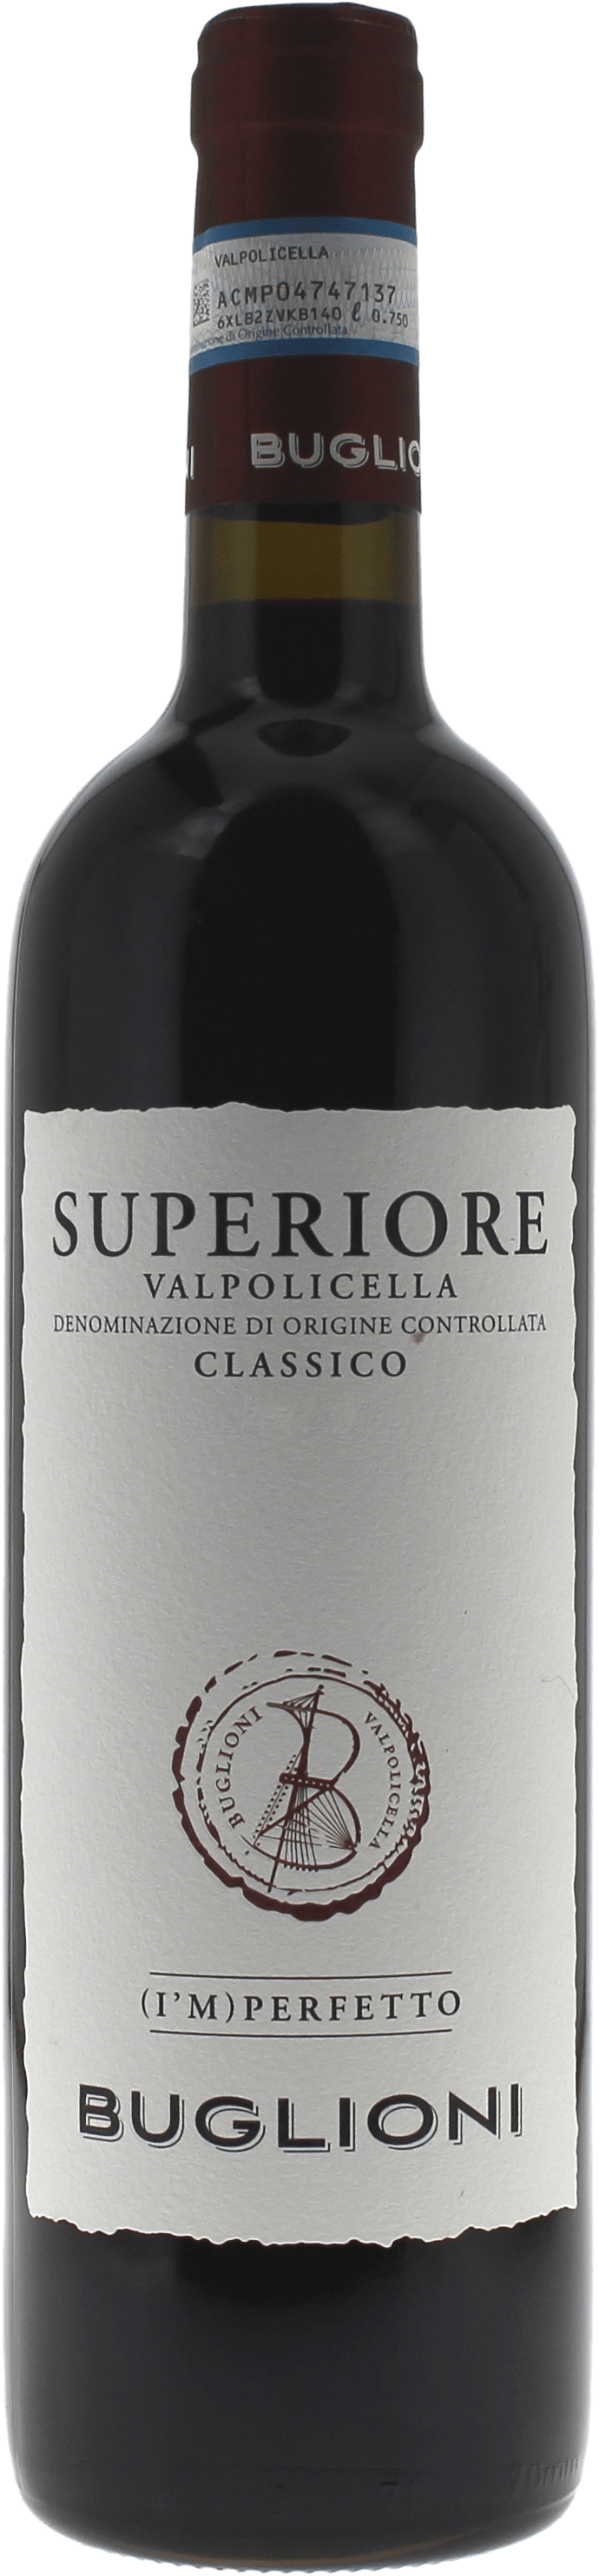 Buglioni - imperfetto valpolicella superiore classico 2020  Italie, Vin italien